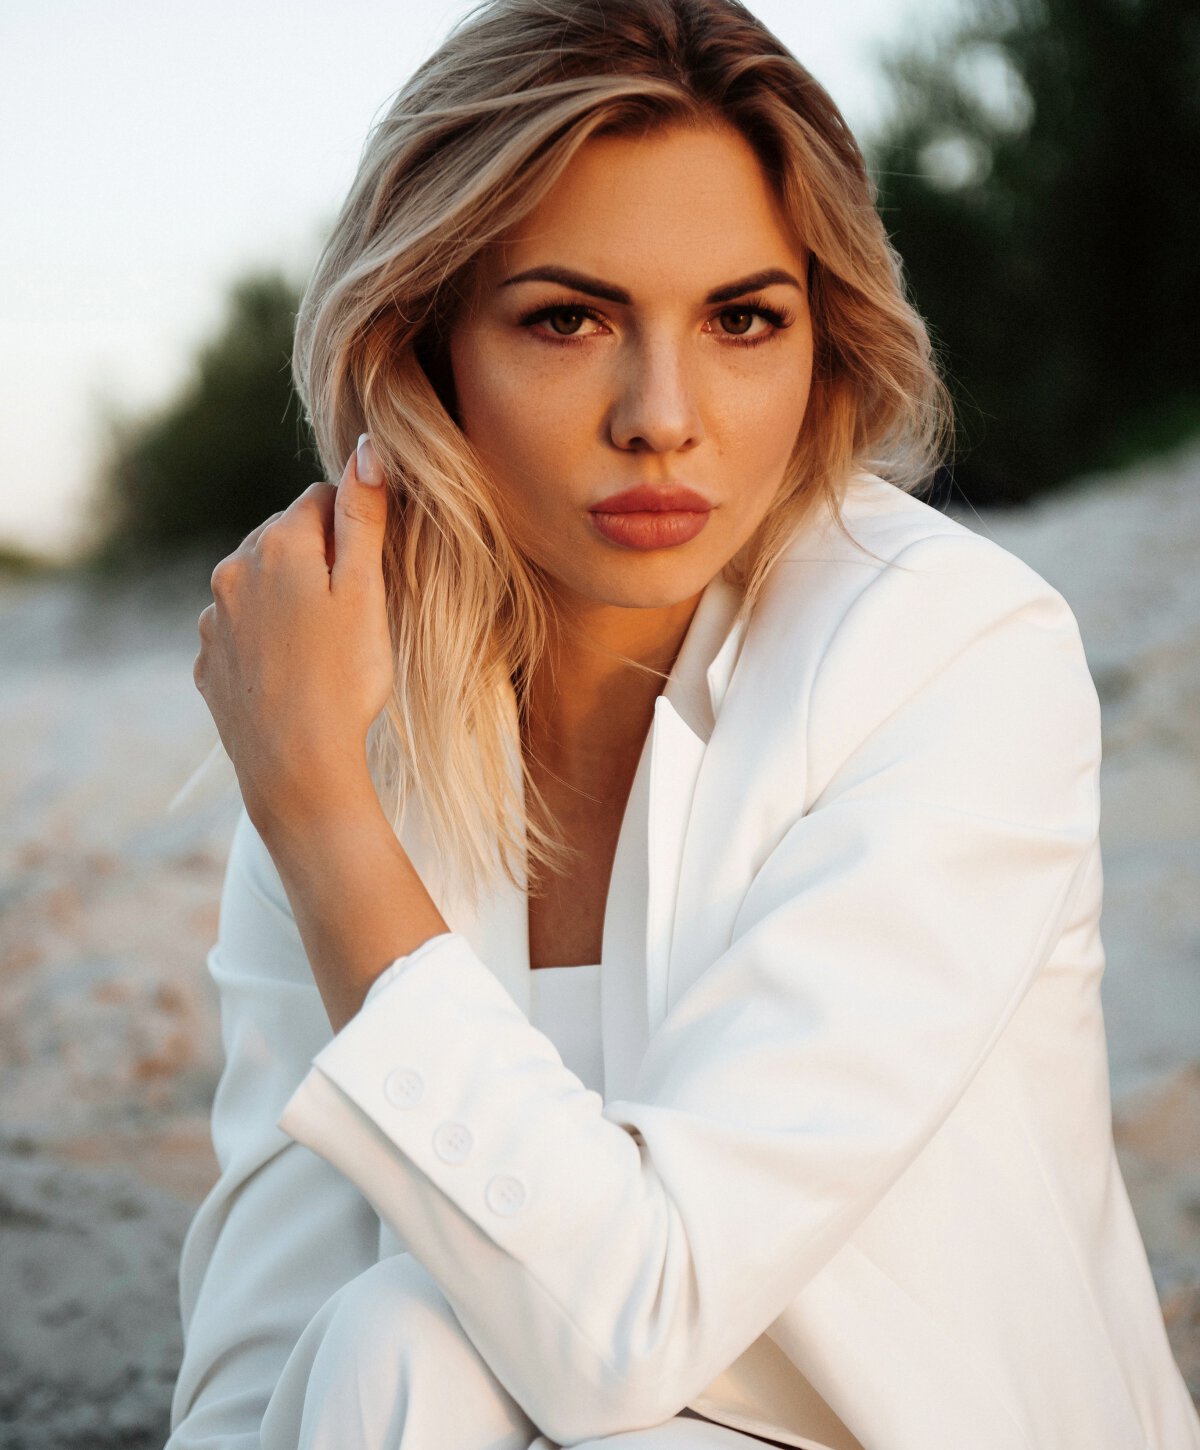 Carolina medspa model with blonde hair